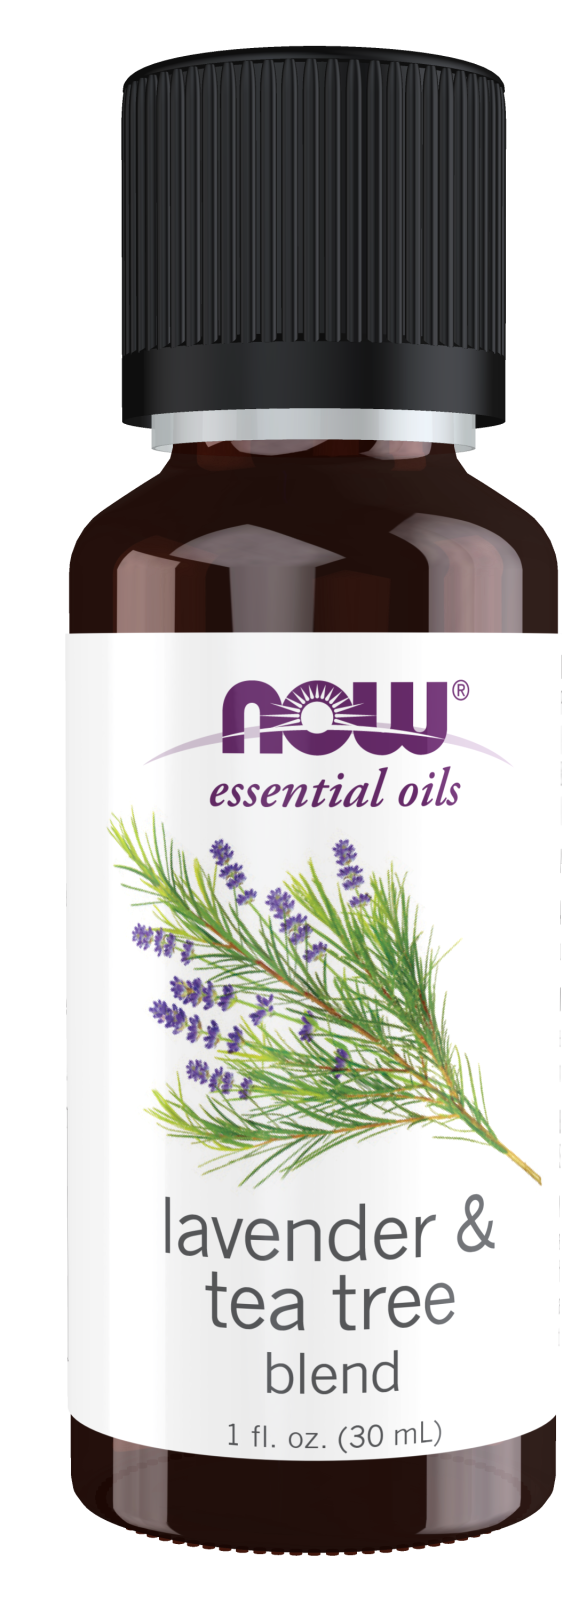 Lavender and Sandalwood Essential Oil Blend Benefits